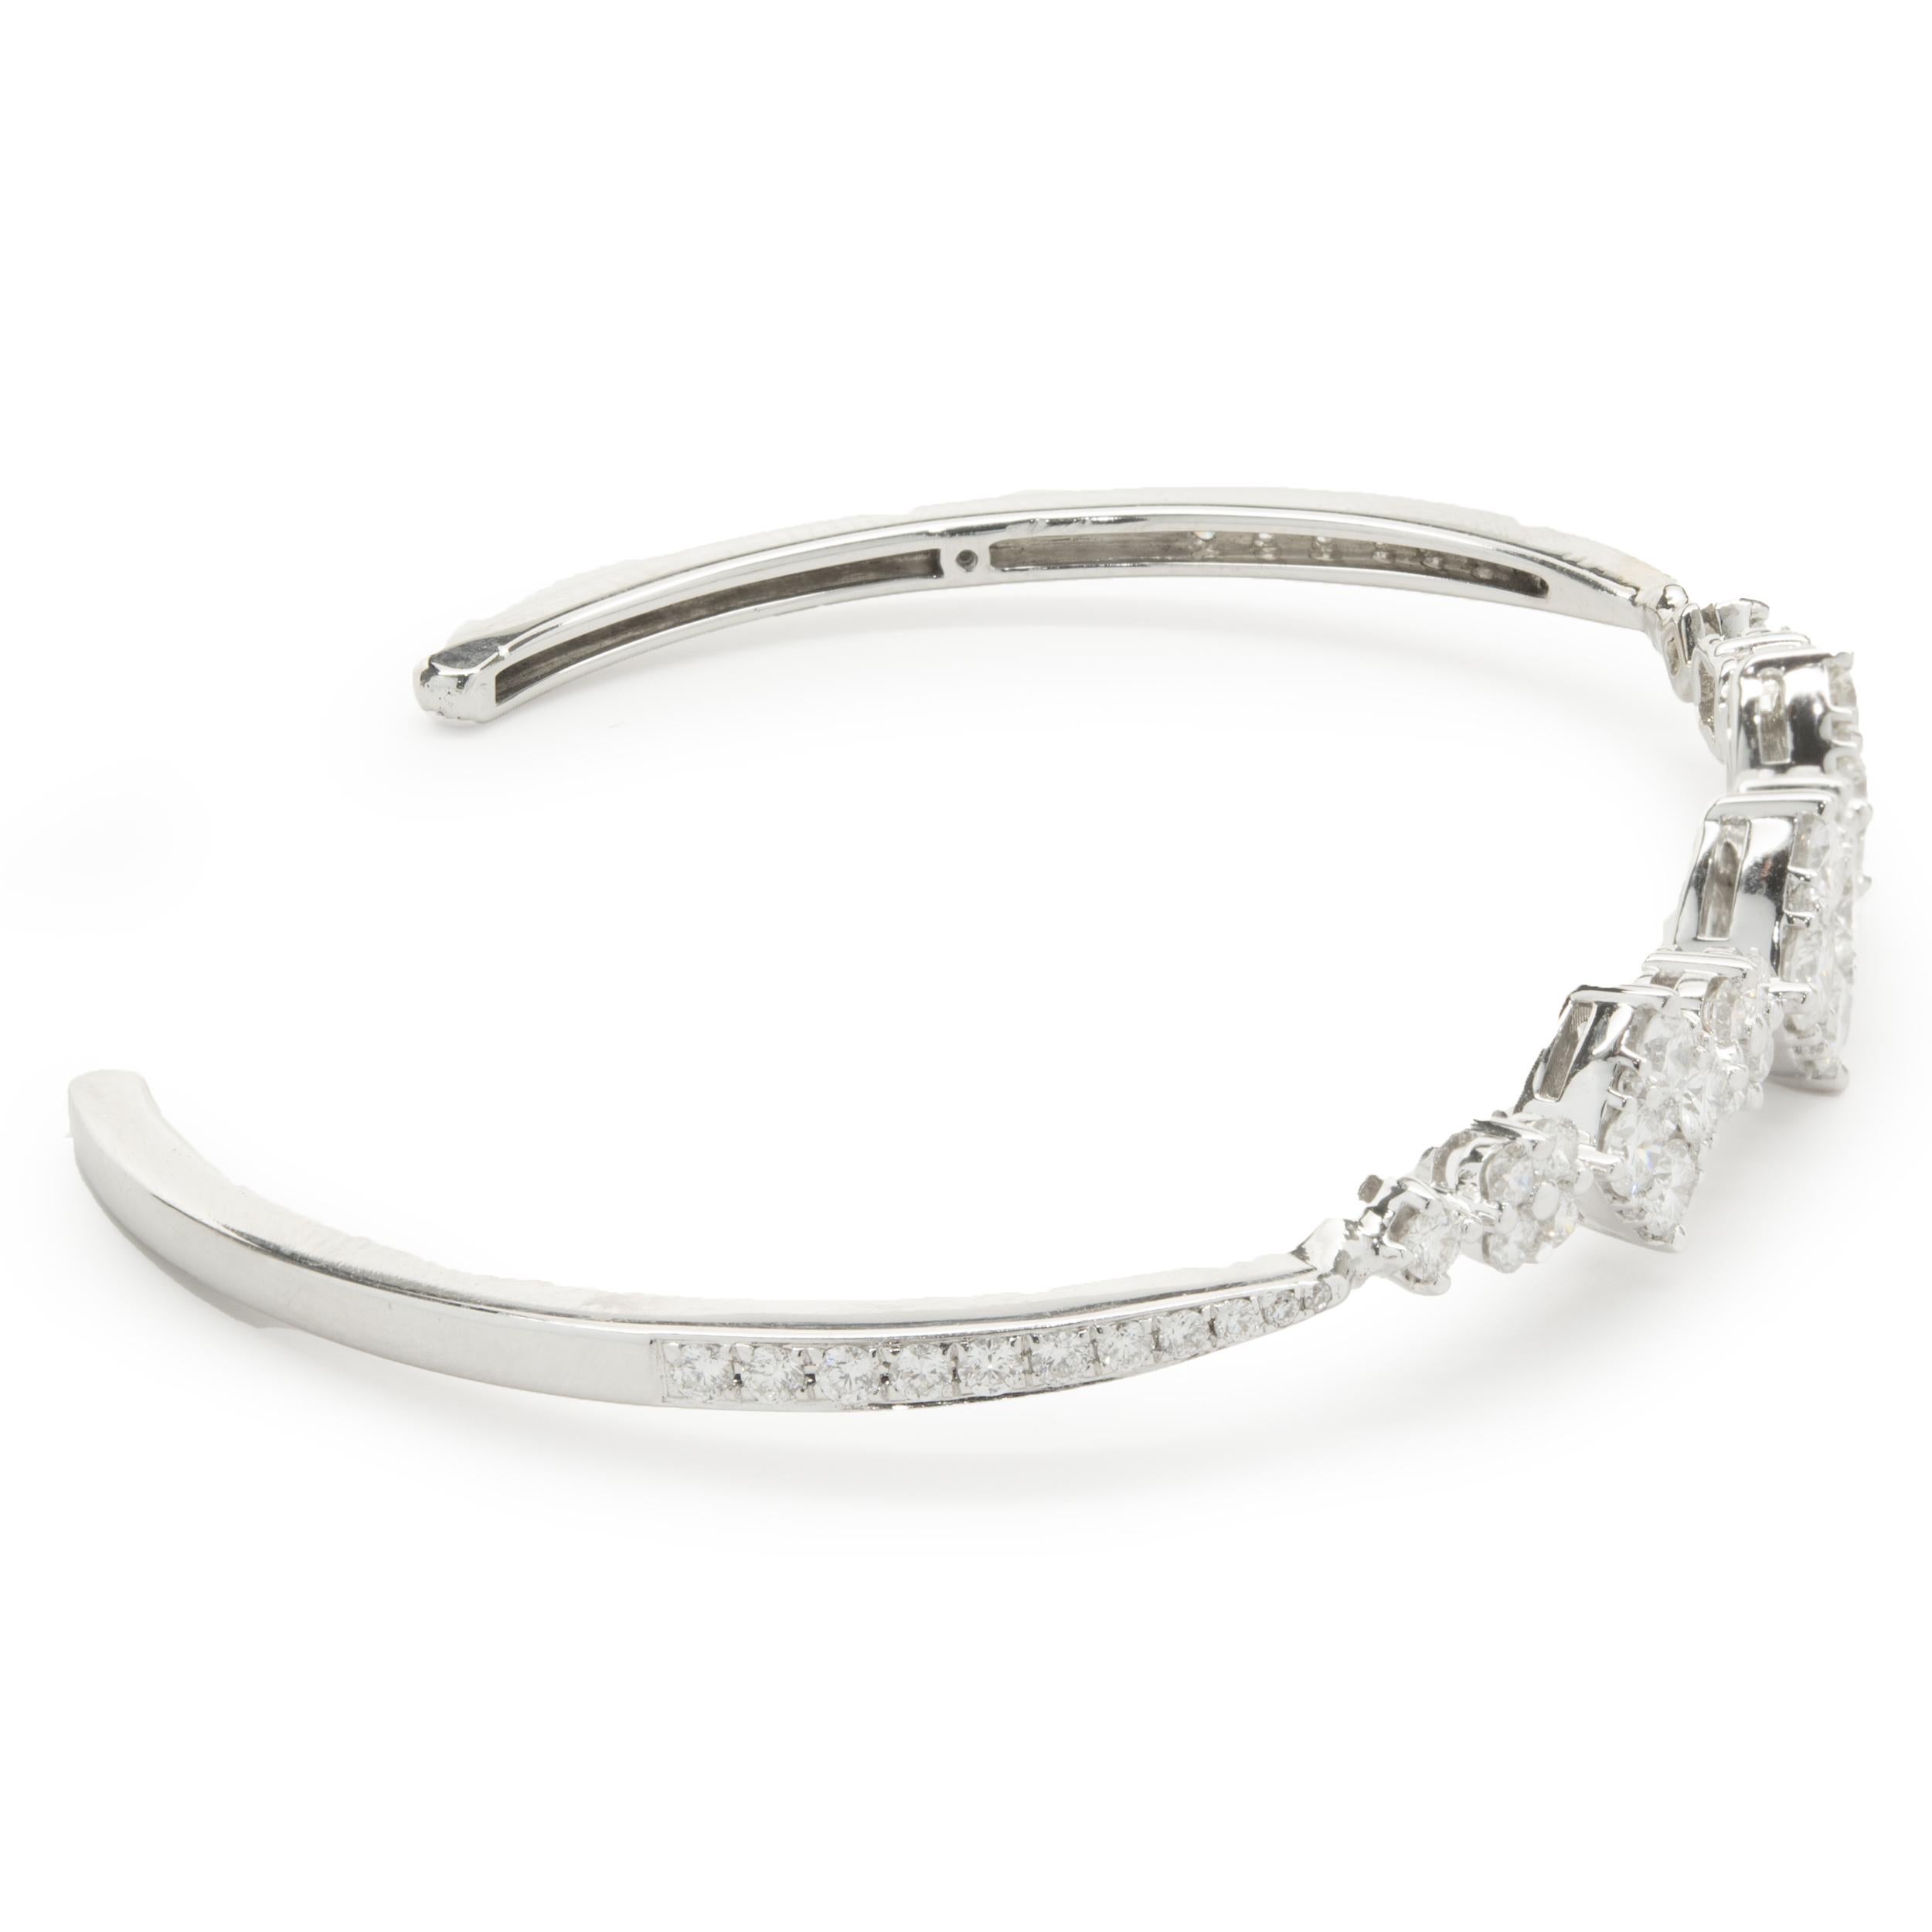 Designer : custom 
Matériau : or blanc 18K
Diamant : 67 diamants ronds de taille brillant = 2,51cttw
Couleur :  F / G
Clarté : VS2
Dimensions : le bracelet convient à un poignet de 15 cm maximum
Poids : 10,24 grammes
